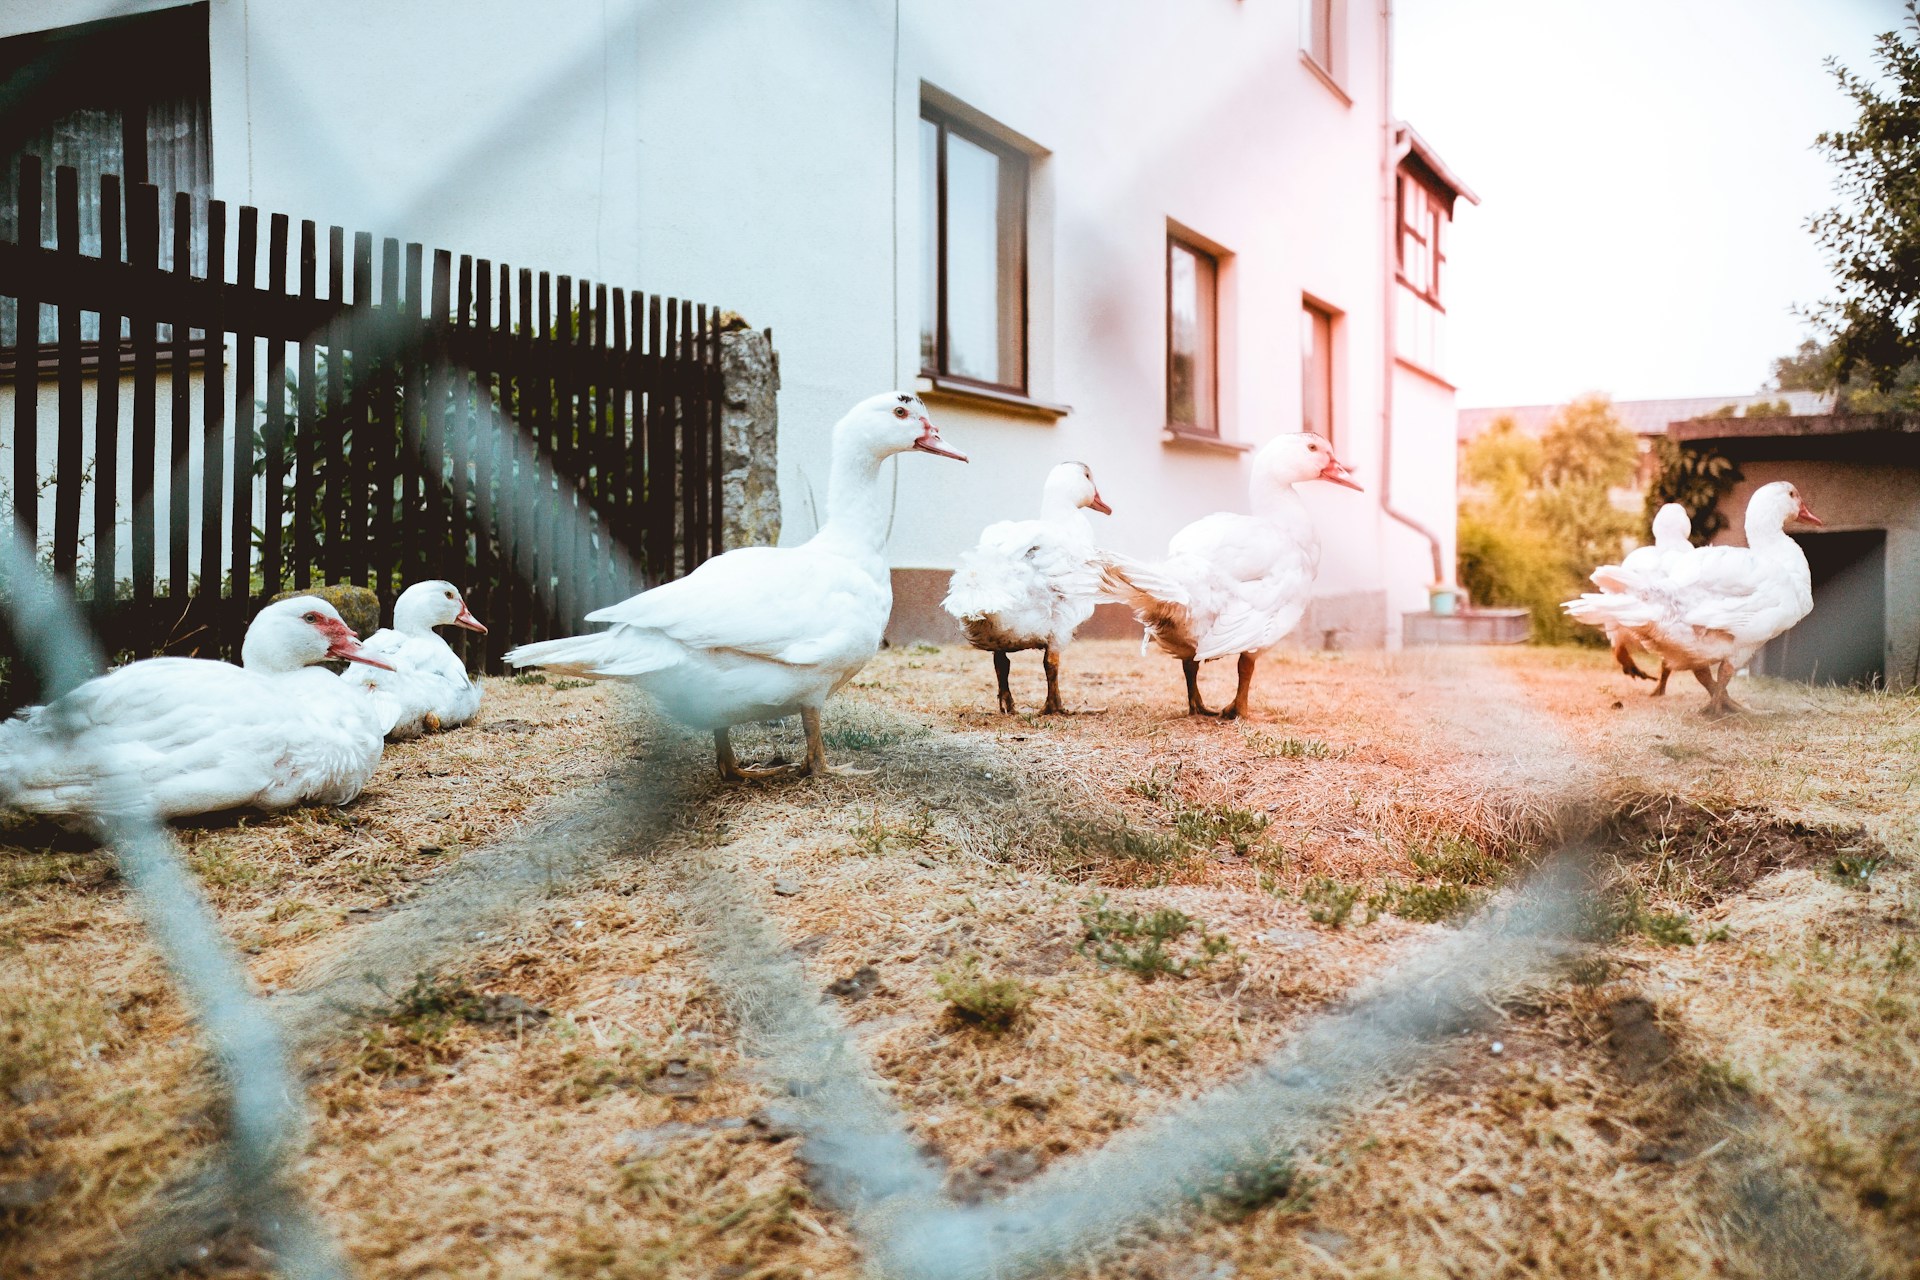 ducks in backyard pen